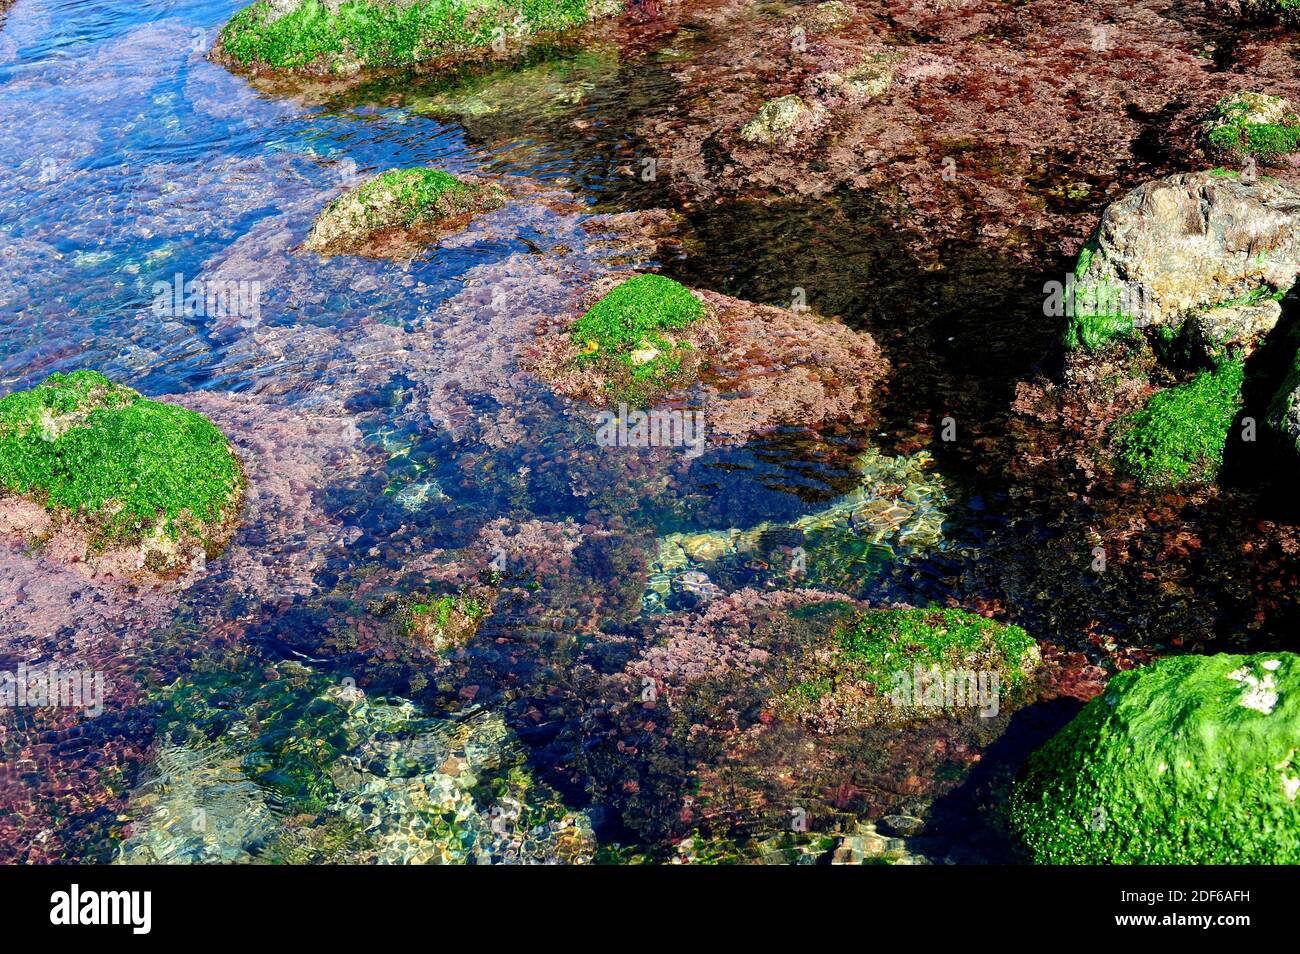 Algas en la costa rocosa: Lechuga de mar (Ulva lactuca) y Corallina elongata. Costa Brava, Girona, Cataluña, España. Foto de stock